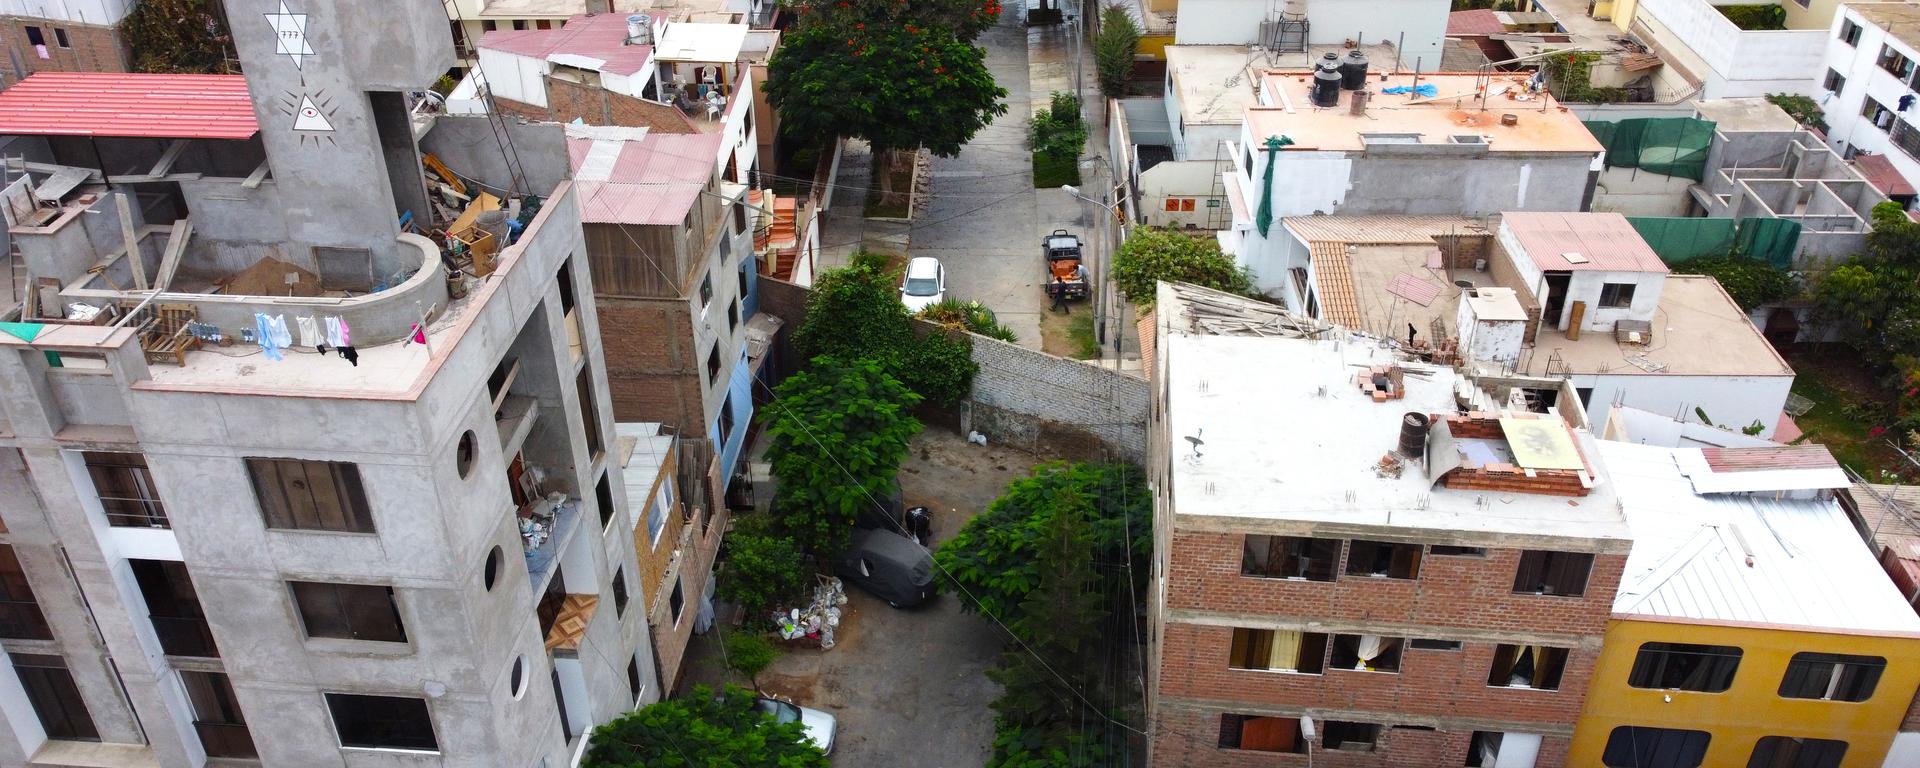 Discriminación vs. seguridad: los muros en dos jirones de Surco que separan a un asentamiento humano de residenciales 